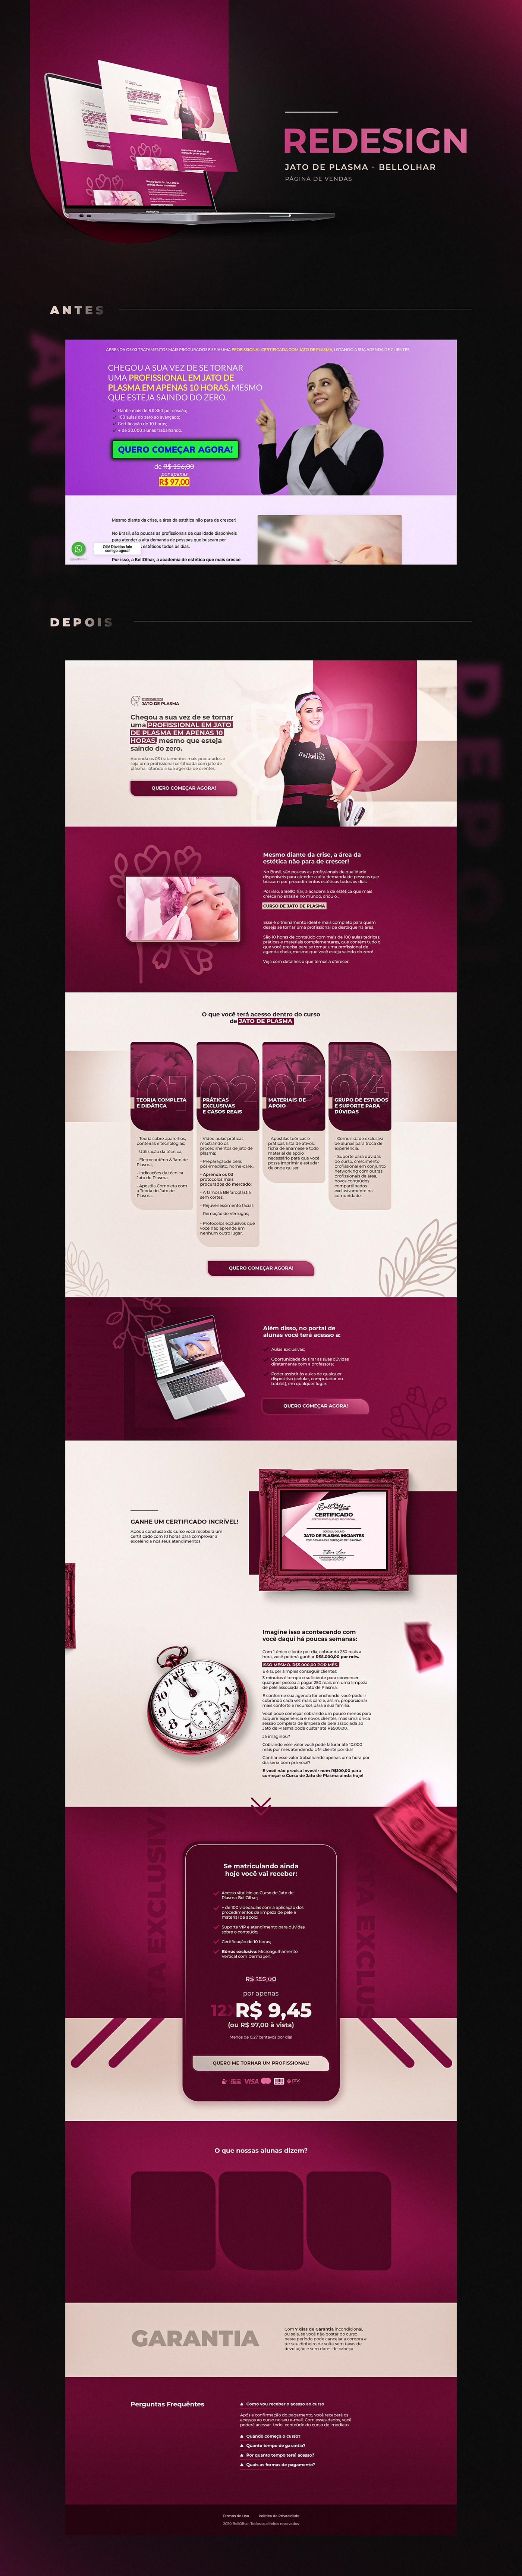 elementor infoproduto lançamento landing page marketing   marketing digital Página de captura pagina de vendas Web Design  estética